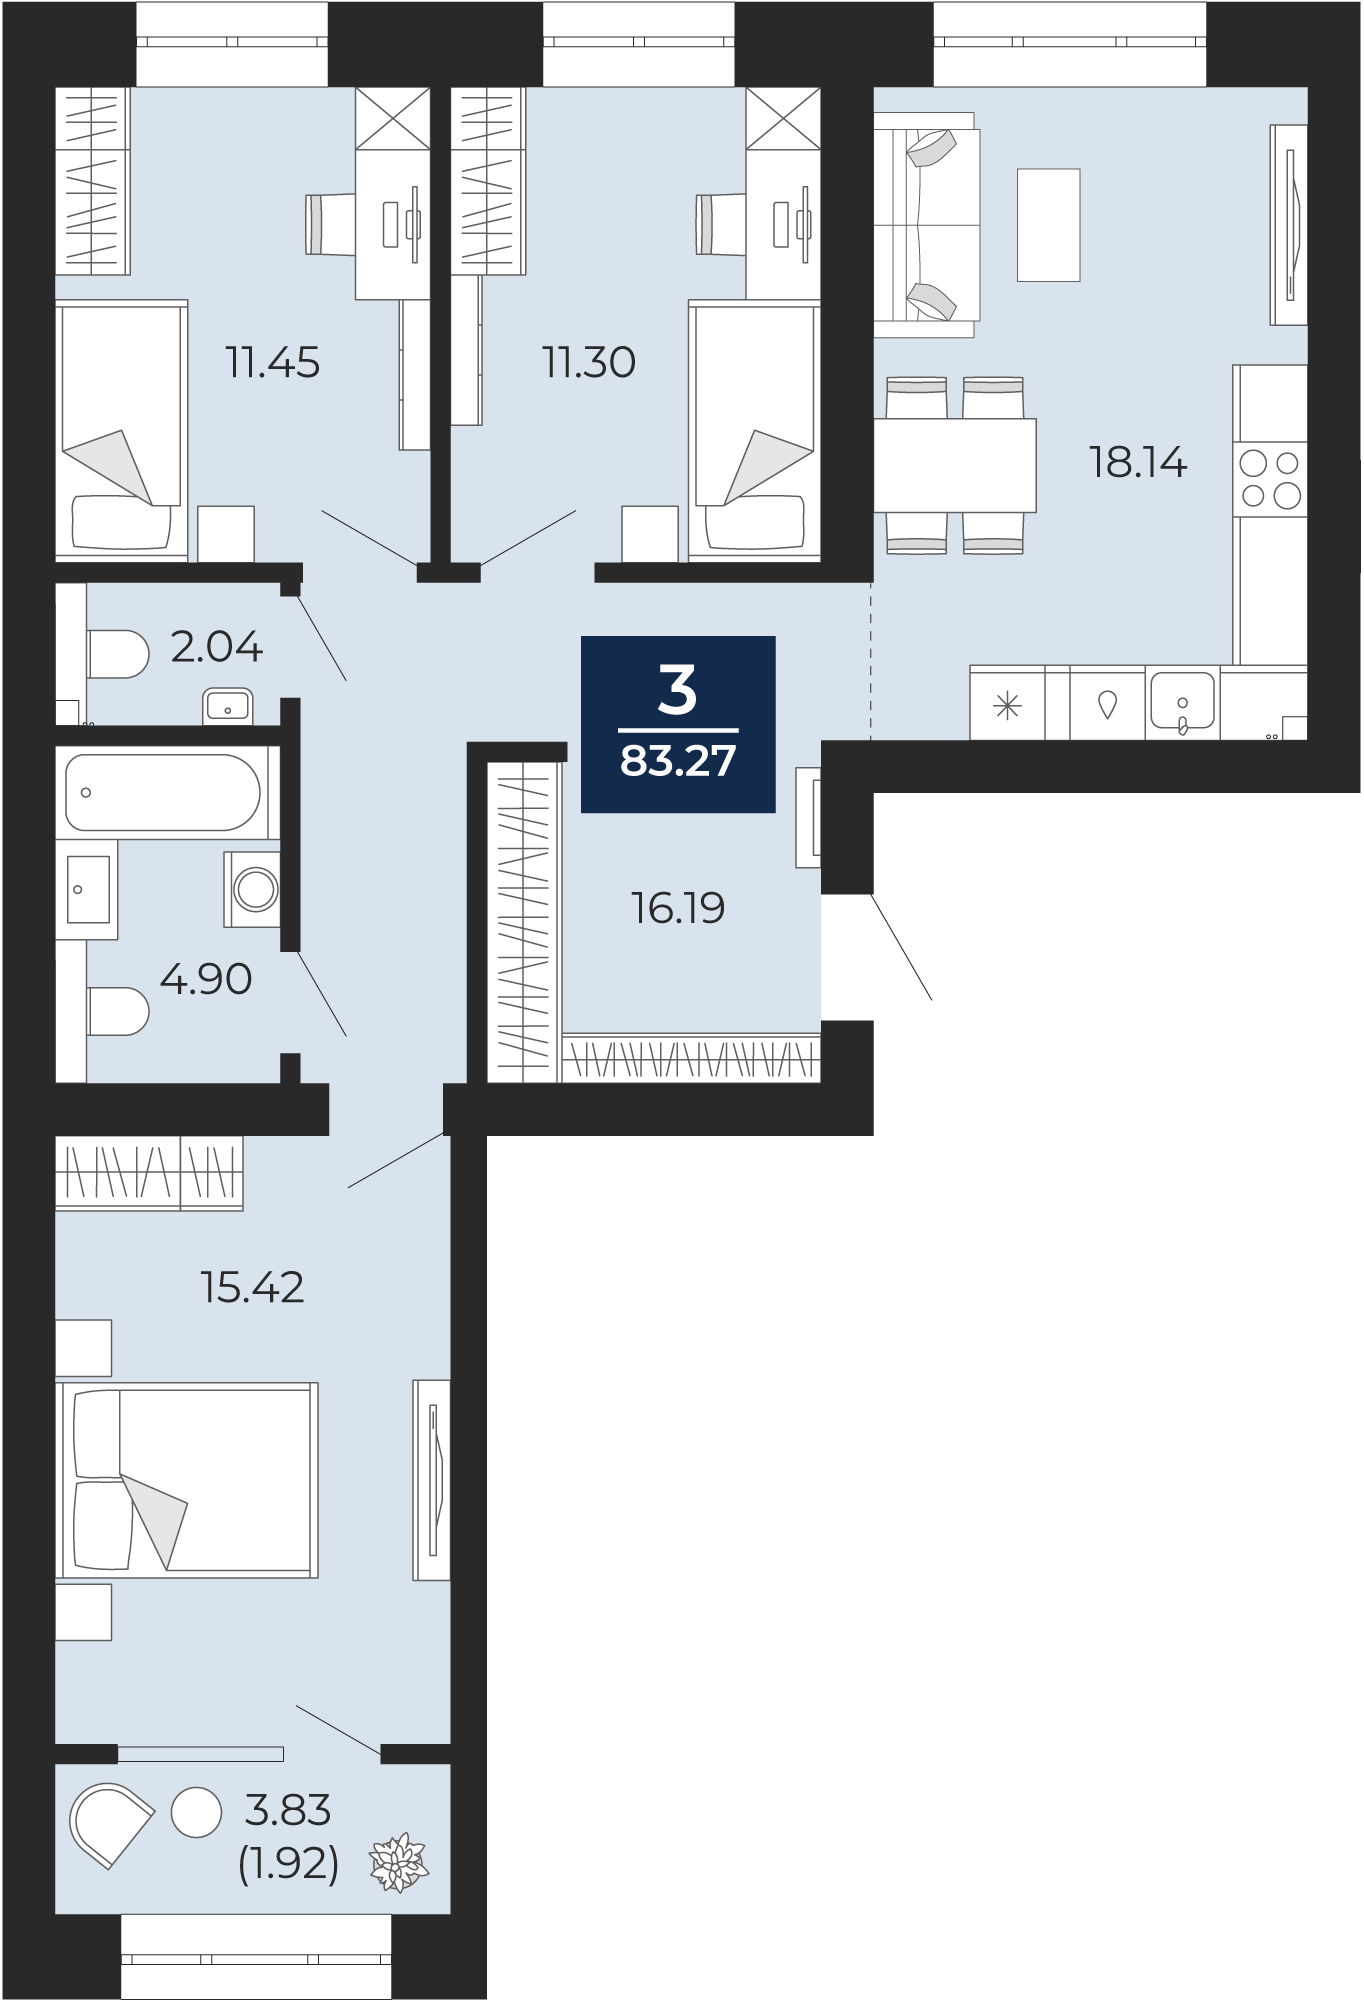 Квартира № 107, 3-комнатная, 83.27 кв. м, 5 этаж